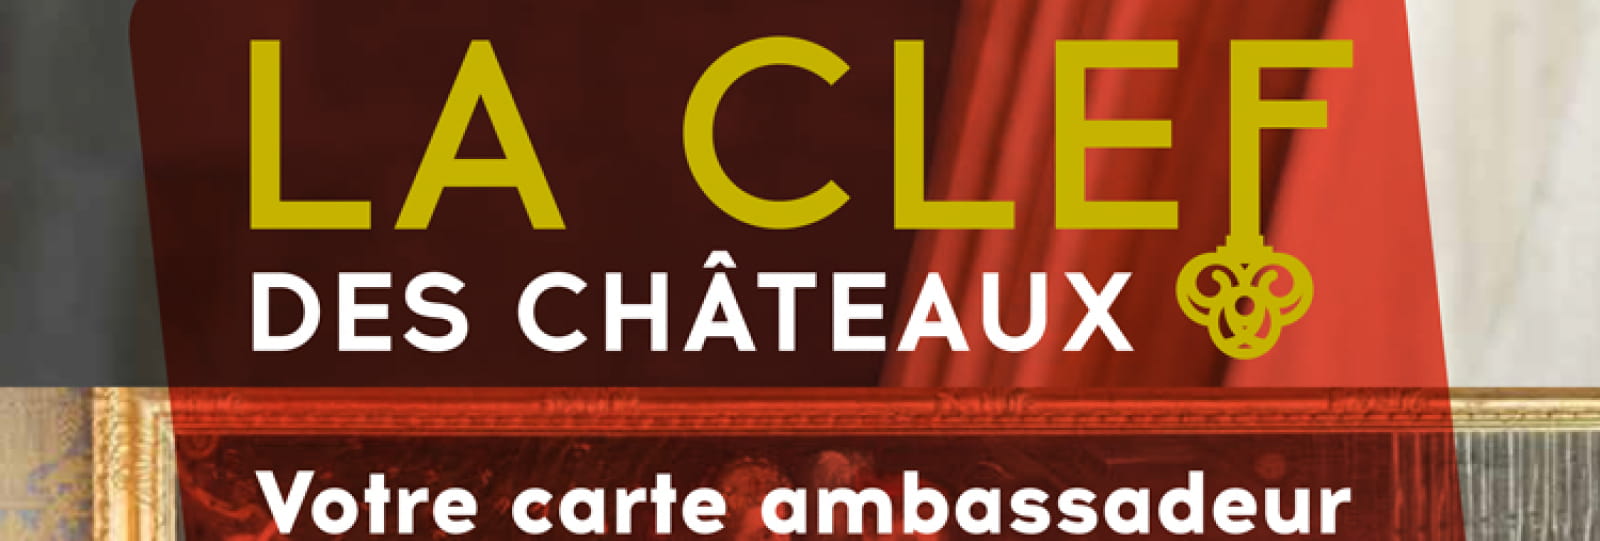 Carte ambassadeur des châteaux de la Drôme